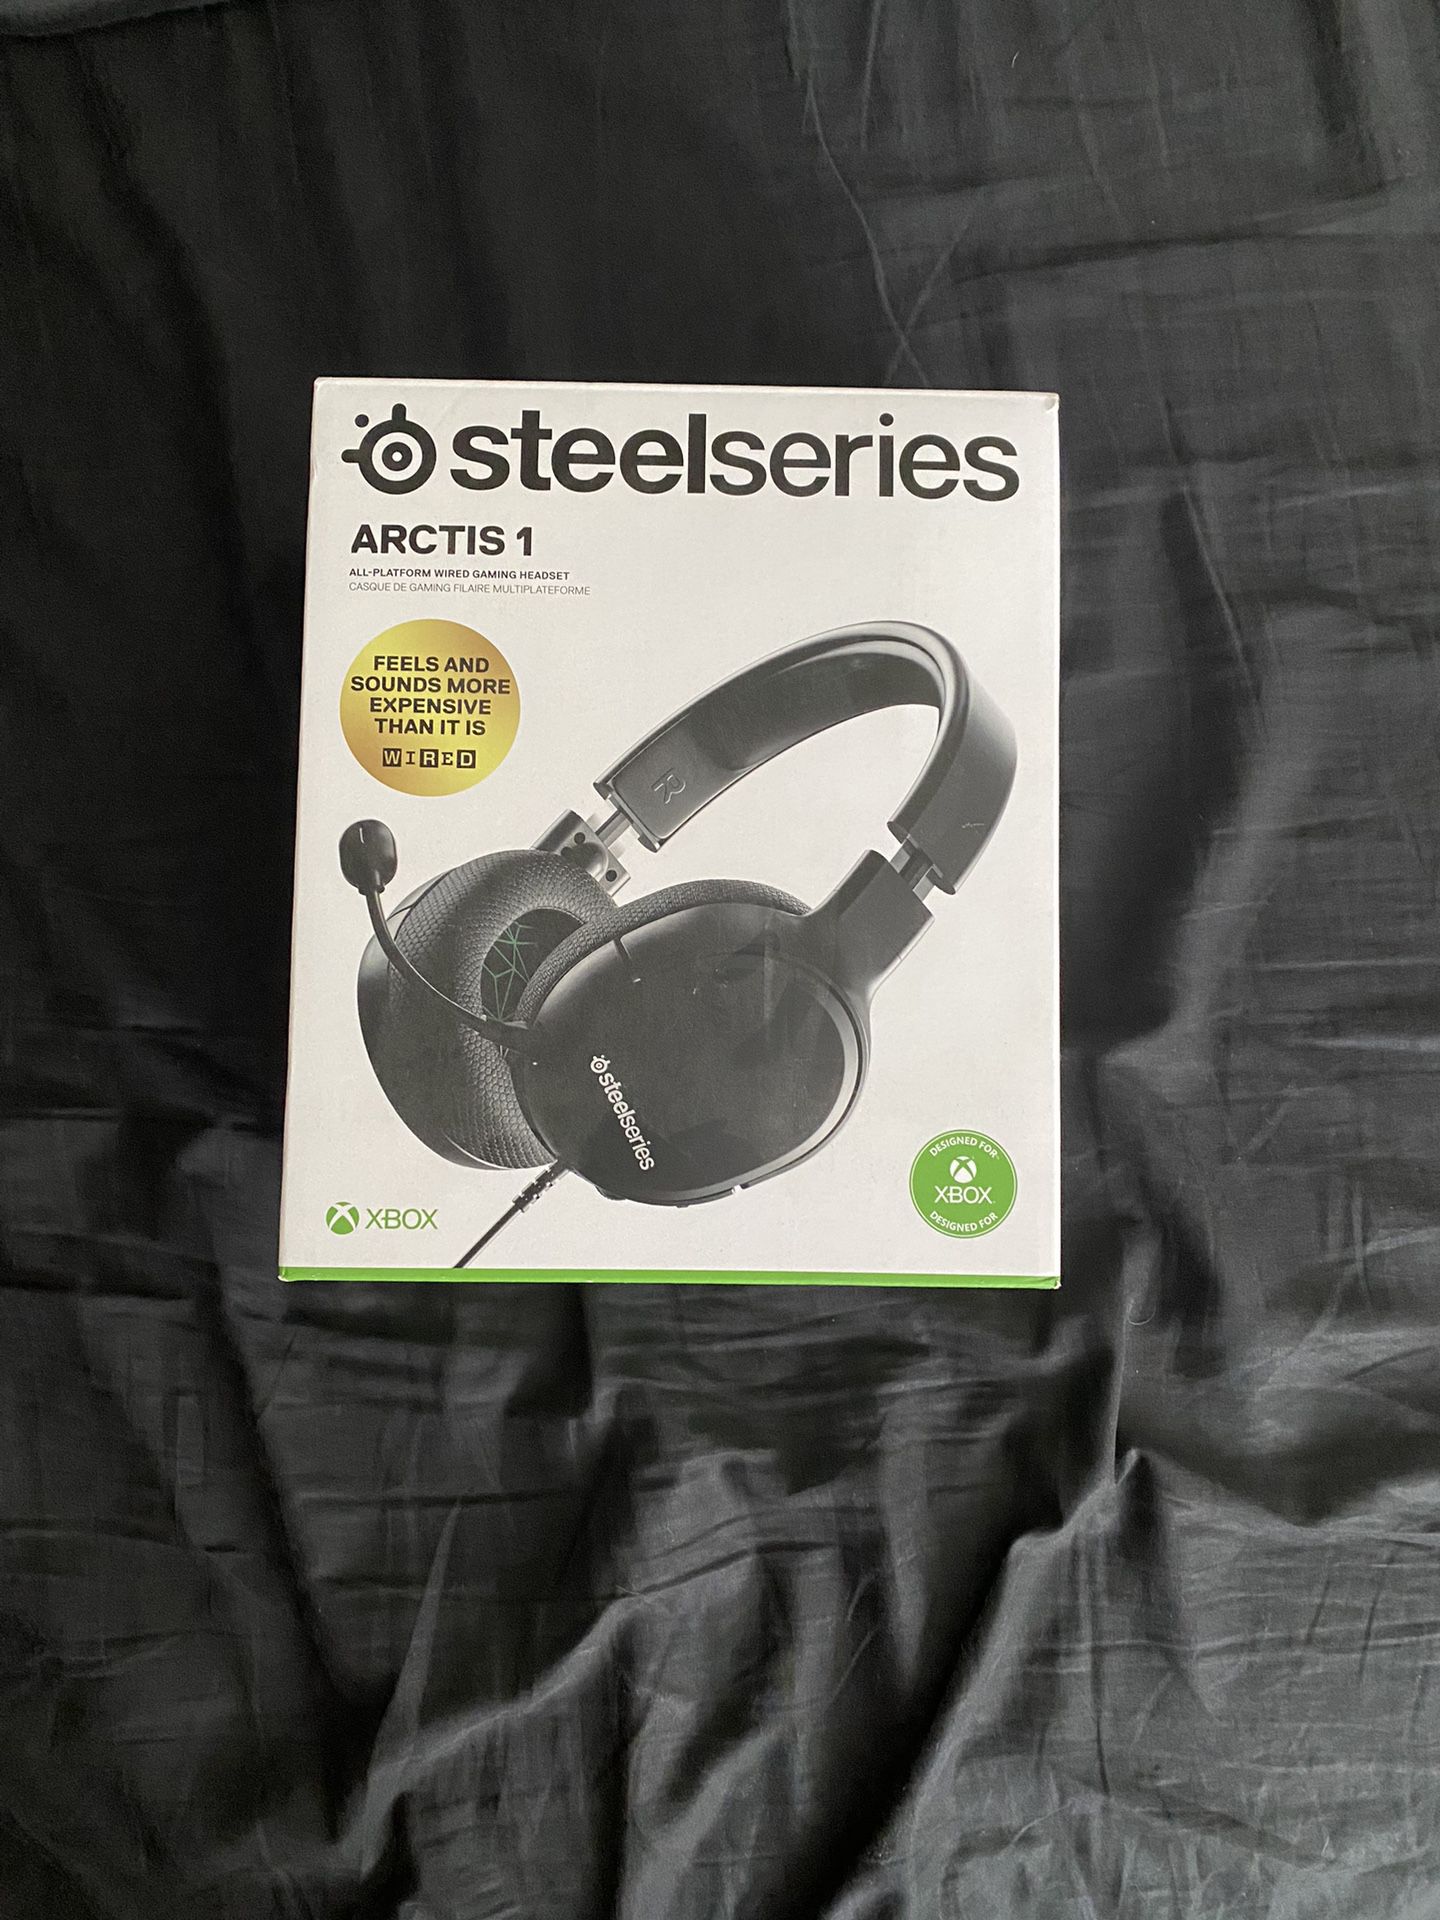 Steel series headphones